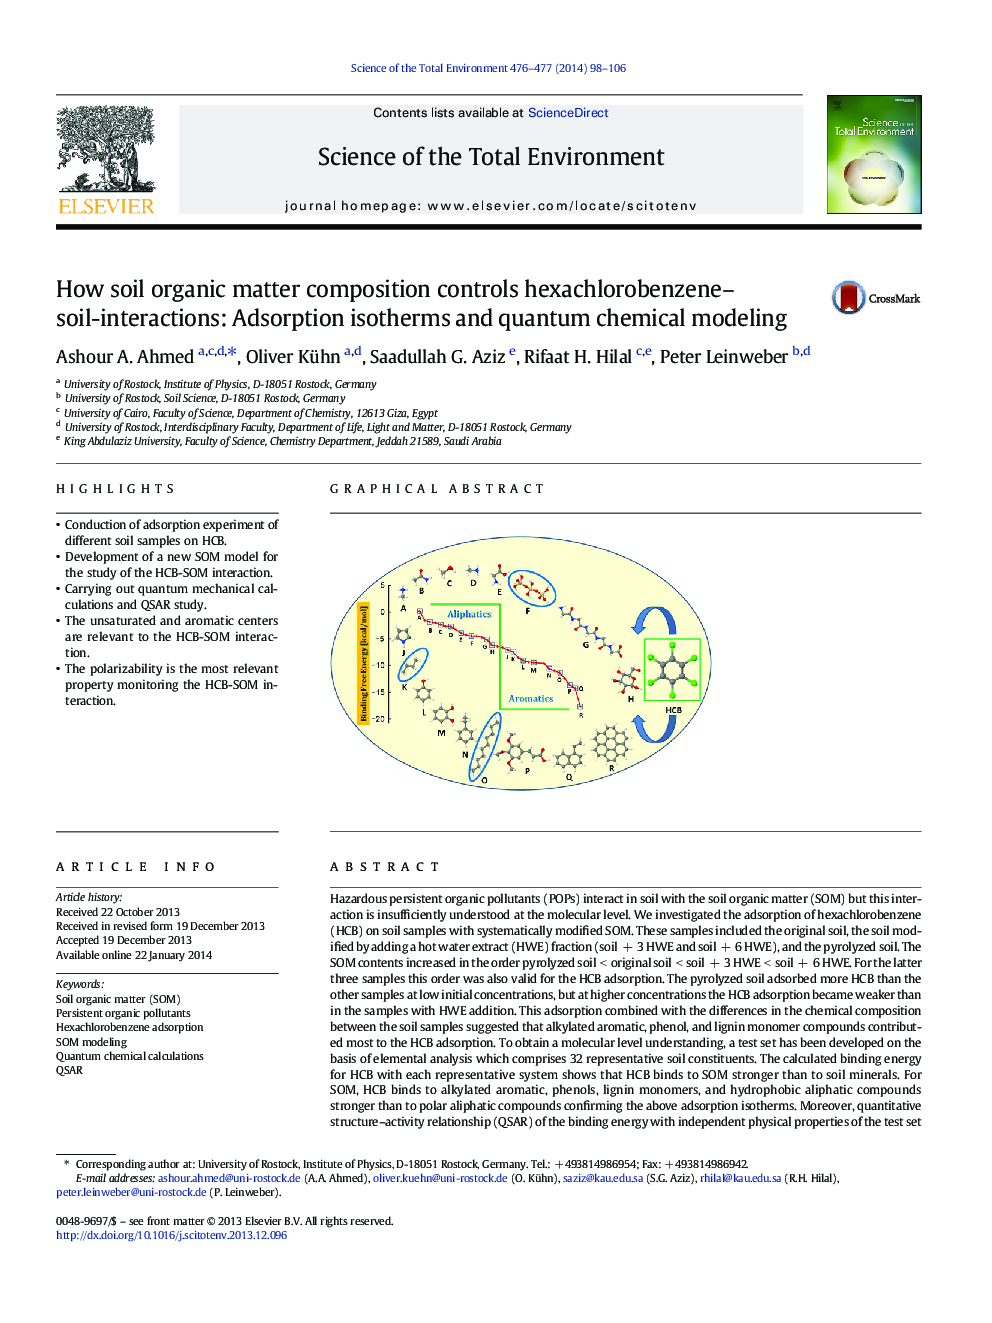 چگونگی ترکیب مواد خاک آلی خاک با همکشلروبنزنها: تعاملات خاک: ایزوترمهای جذب و مدلسازی شیمیایی کوانتومی 